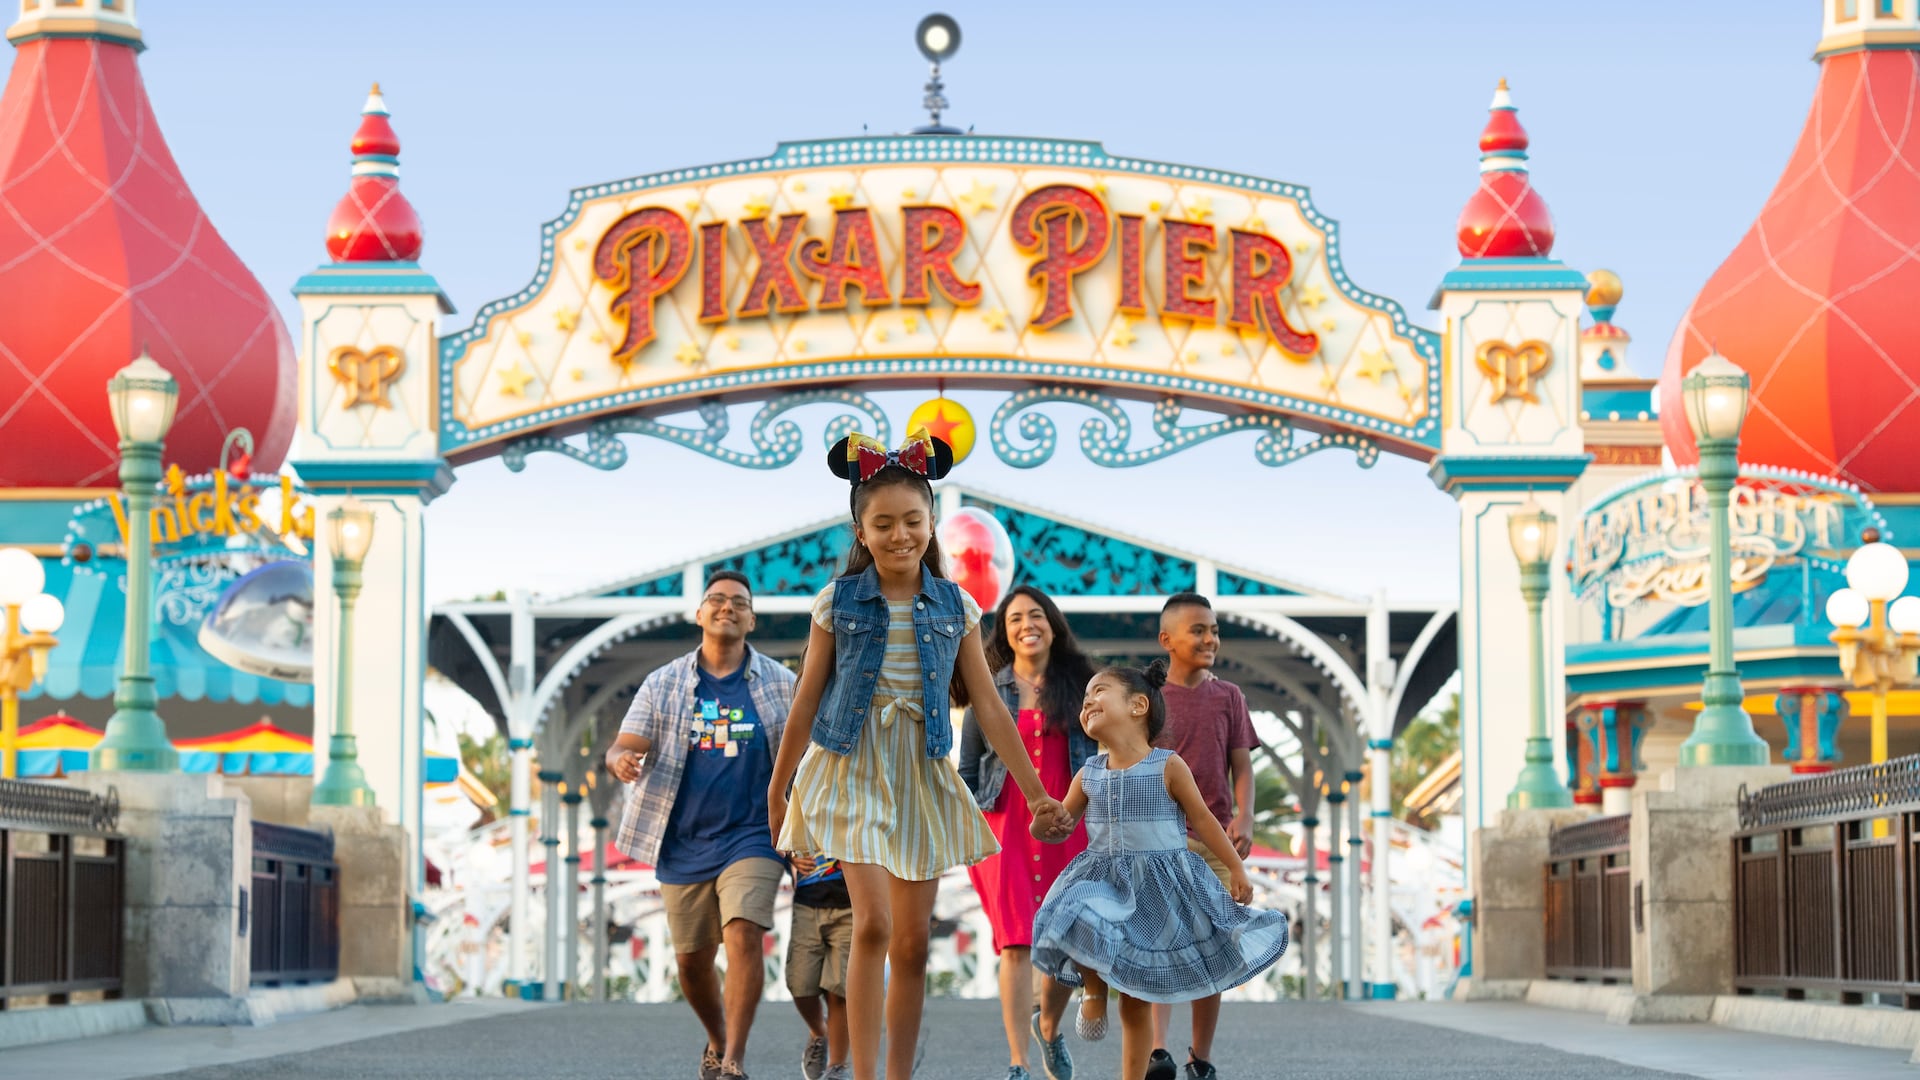 Image result for pixar pier entrance